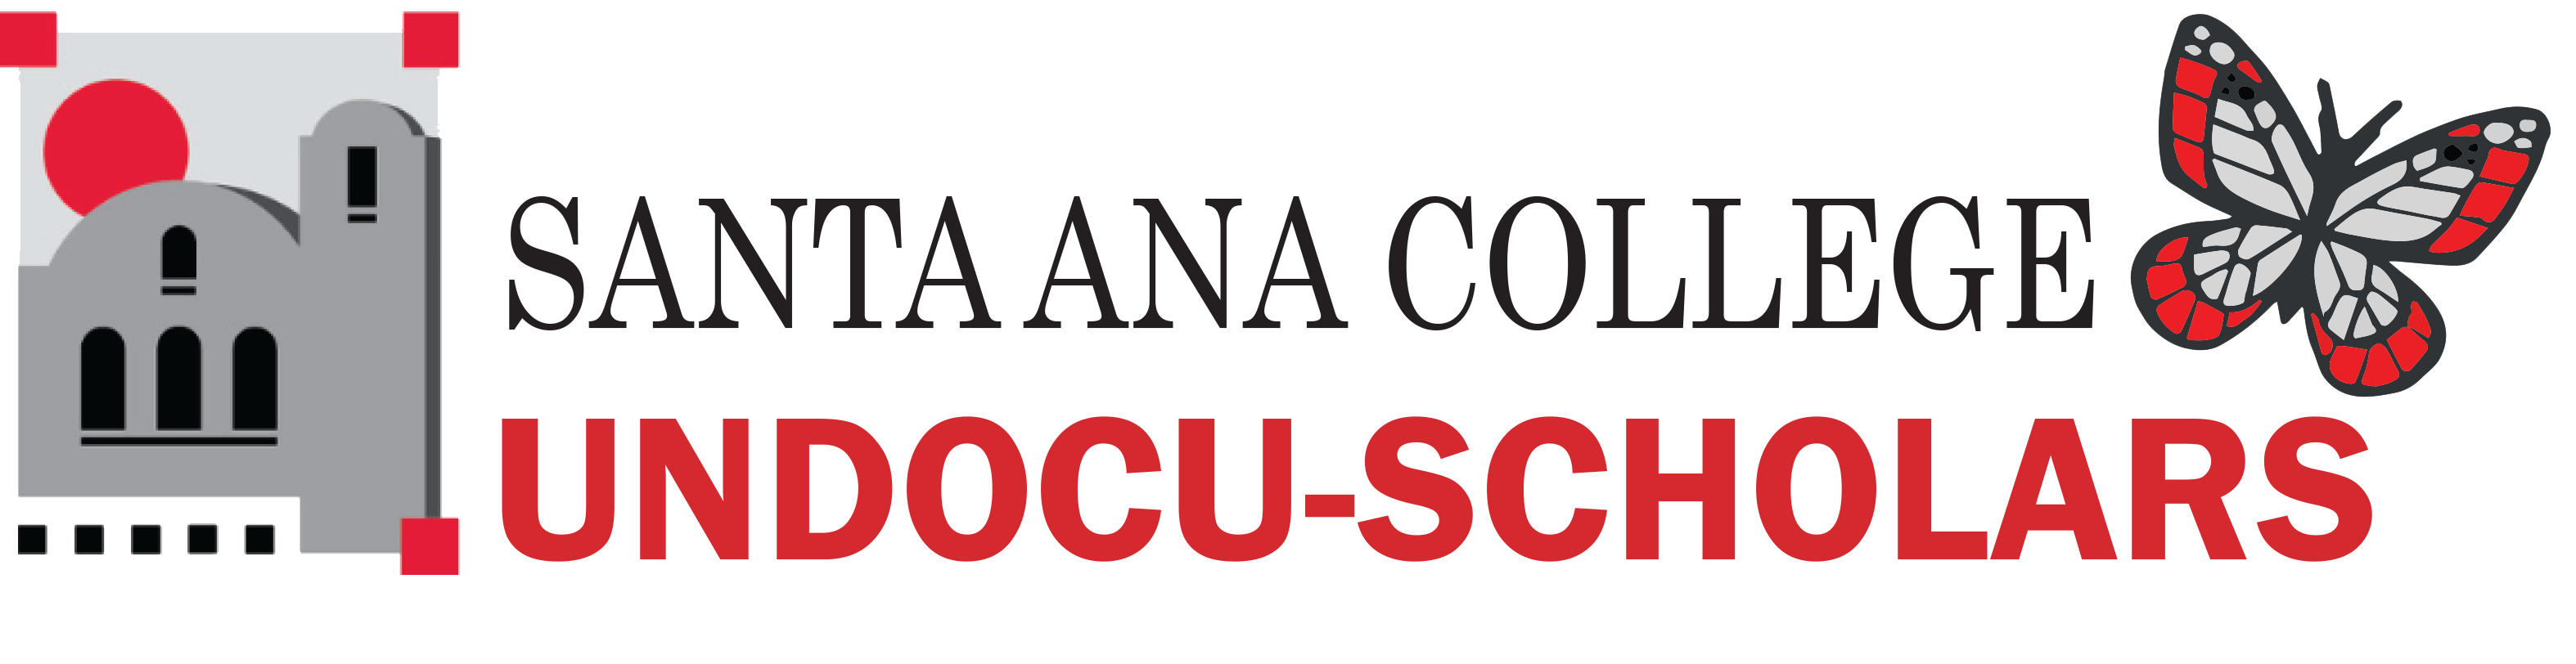 Undocu-Scholar Center Logo Final.png